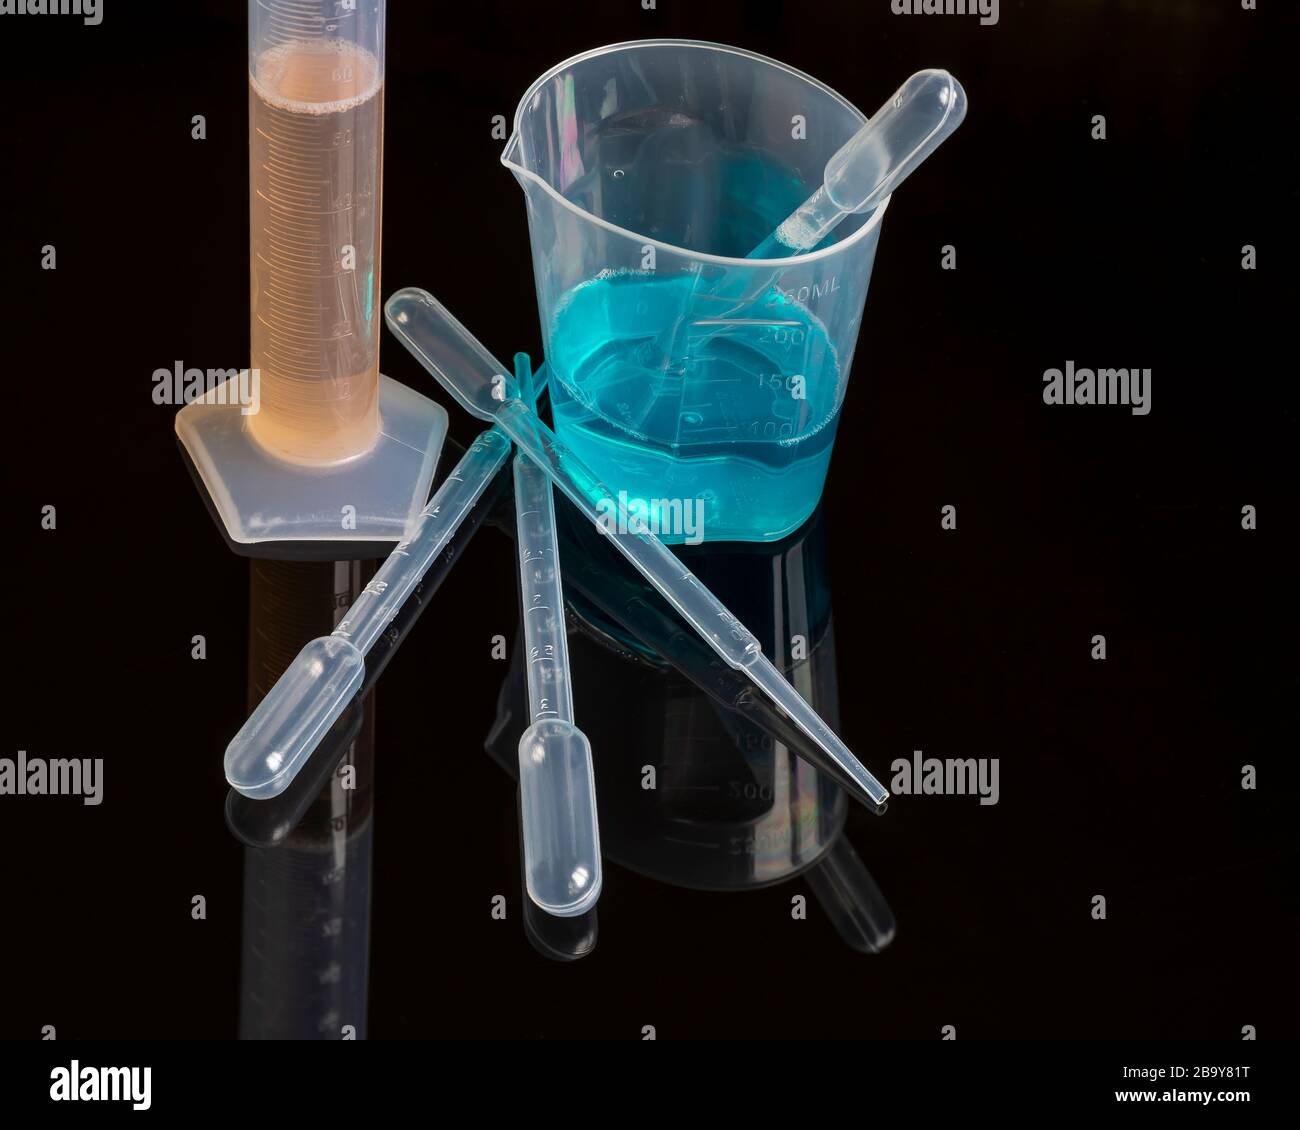 Composizione di strumenti e apparecchiature tipiche di laboratorio per analisi chimiche con liquidi colorati Foto Stock